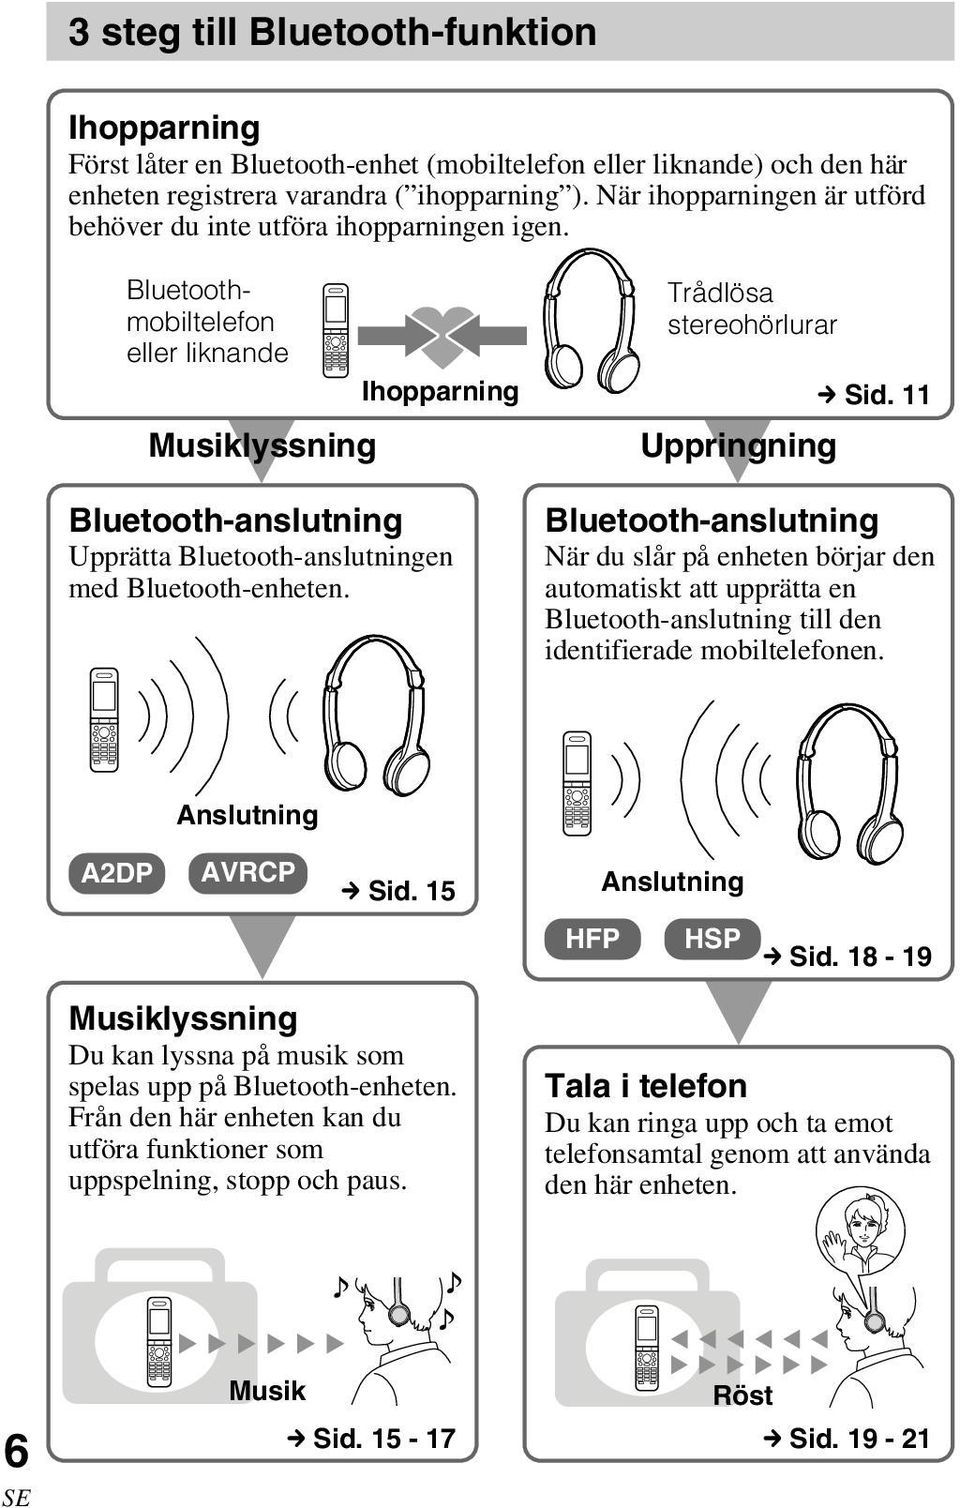 Bluetoothmobiltelefon eller liknande Ihopparning Musiklyssning V Bluetooth-anslutning Upprätta Bluetooth-anslutningen med Bluetooth-enheten. Trådlösa stereohörlurar c Sid.